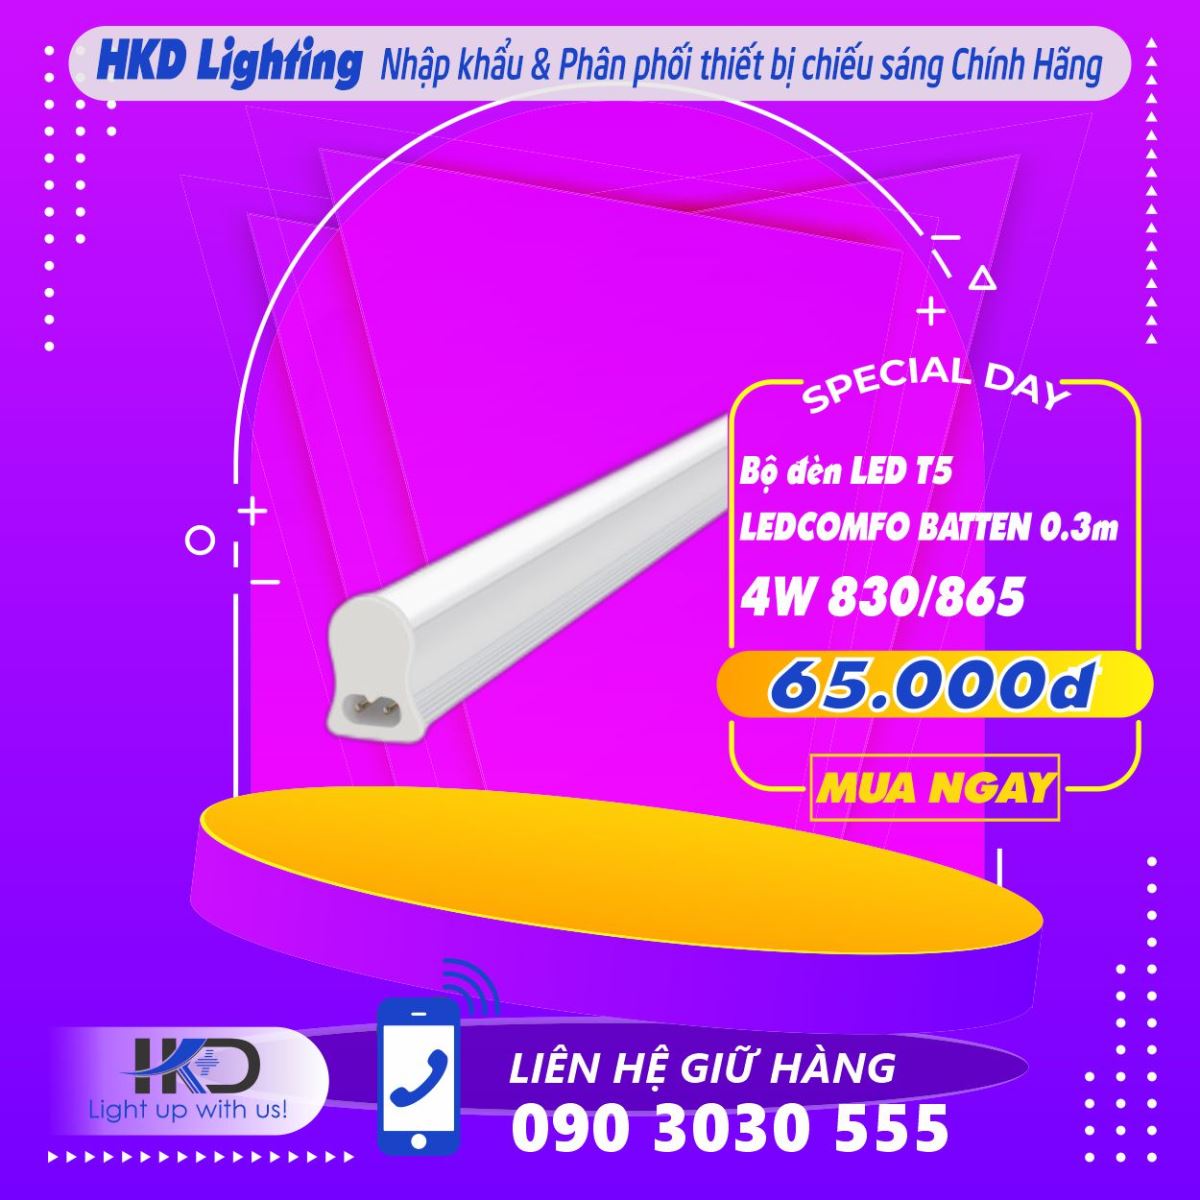 Bộ đèn LED T5 LEDCOMFO BATTEN OSRAM - Lắp đặt dễ dàng, Ánh sáng chất lượng